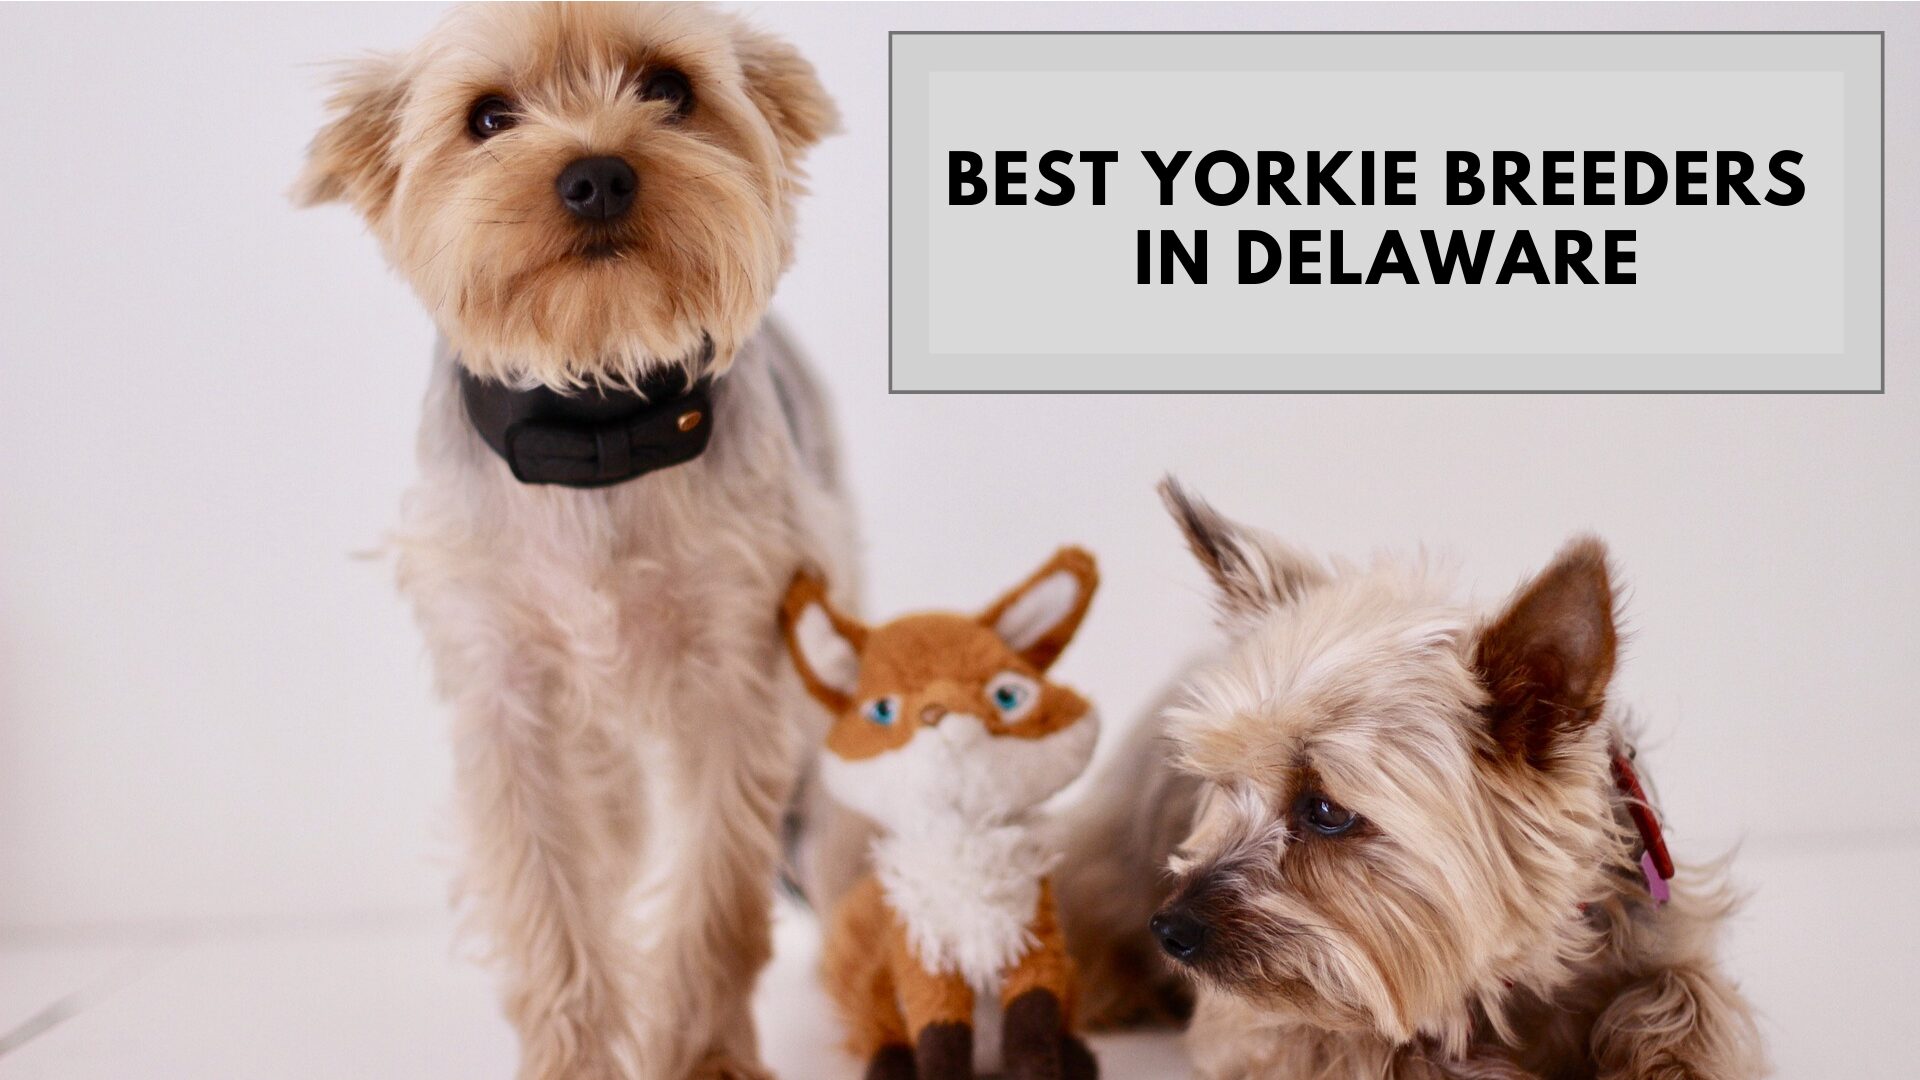 Best Yorkie Breeders in Delaware